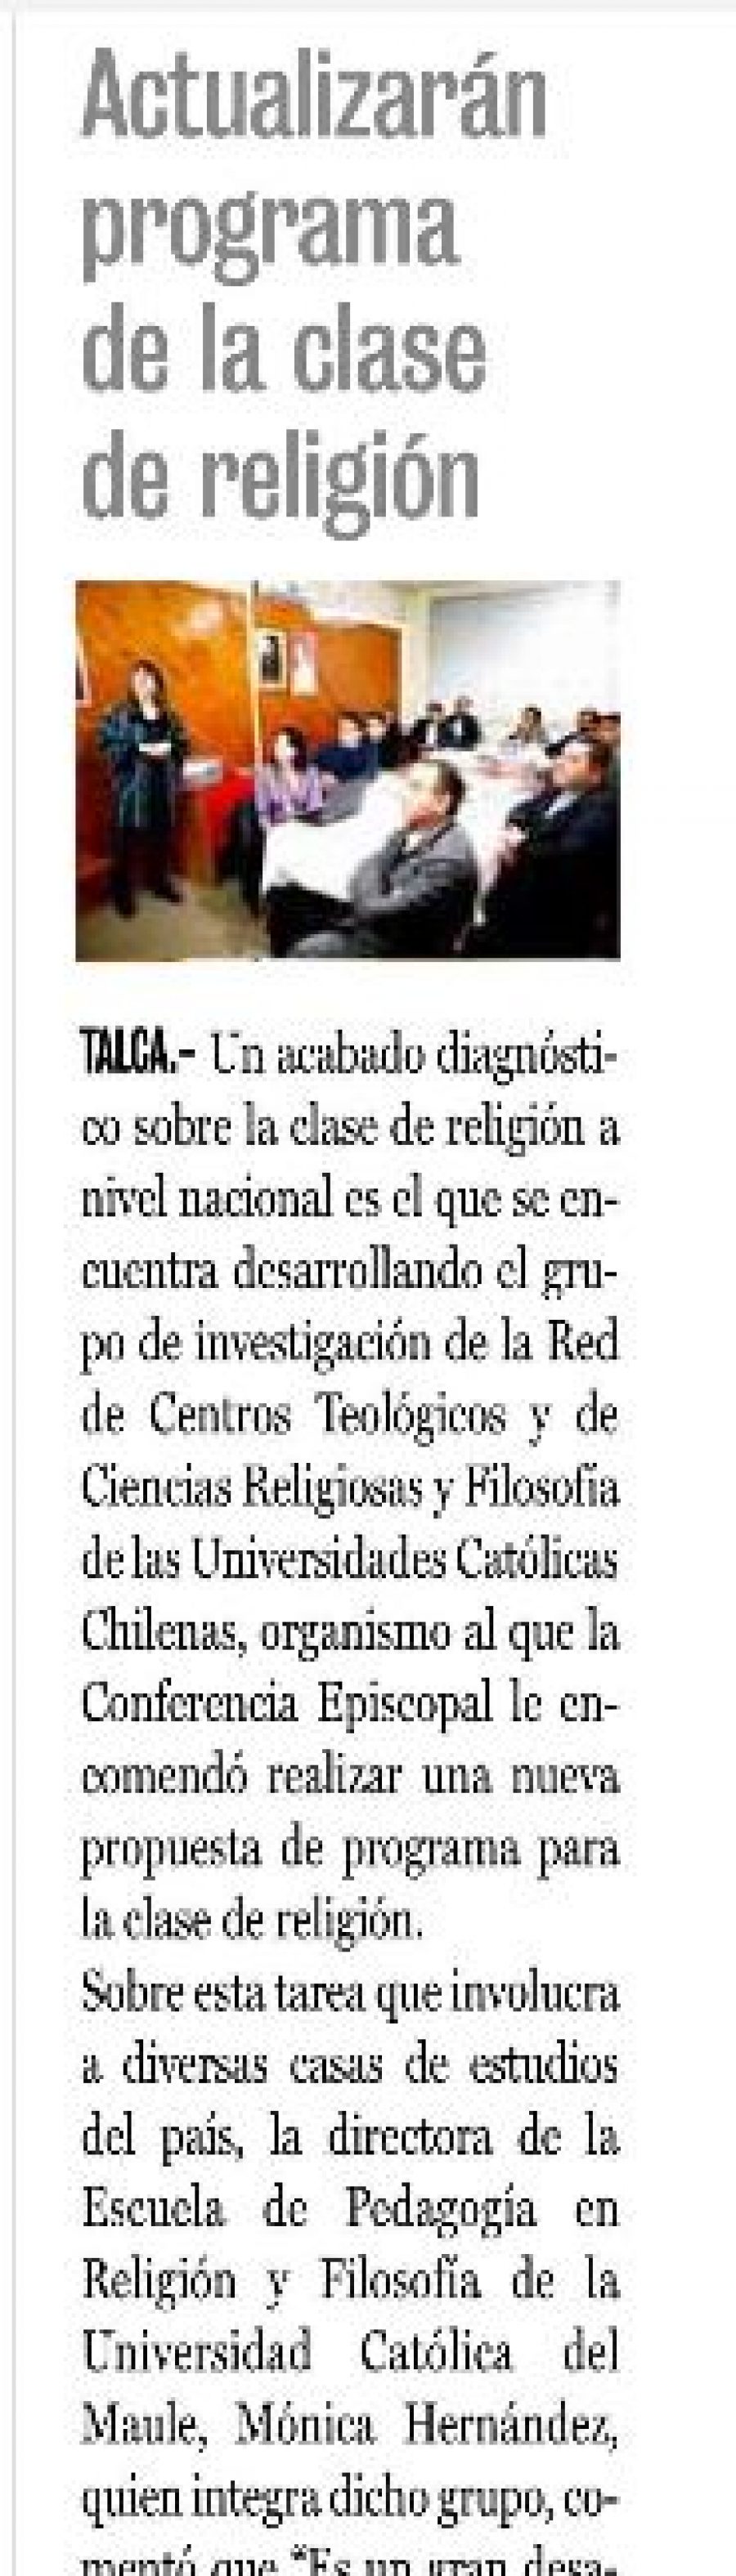 06 de mayo en Diario La Prensa: “Actualizarán programa de la clase de religión”